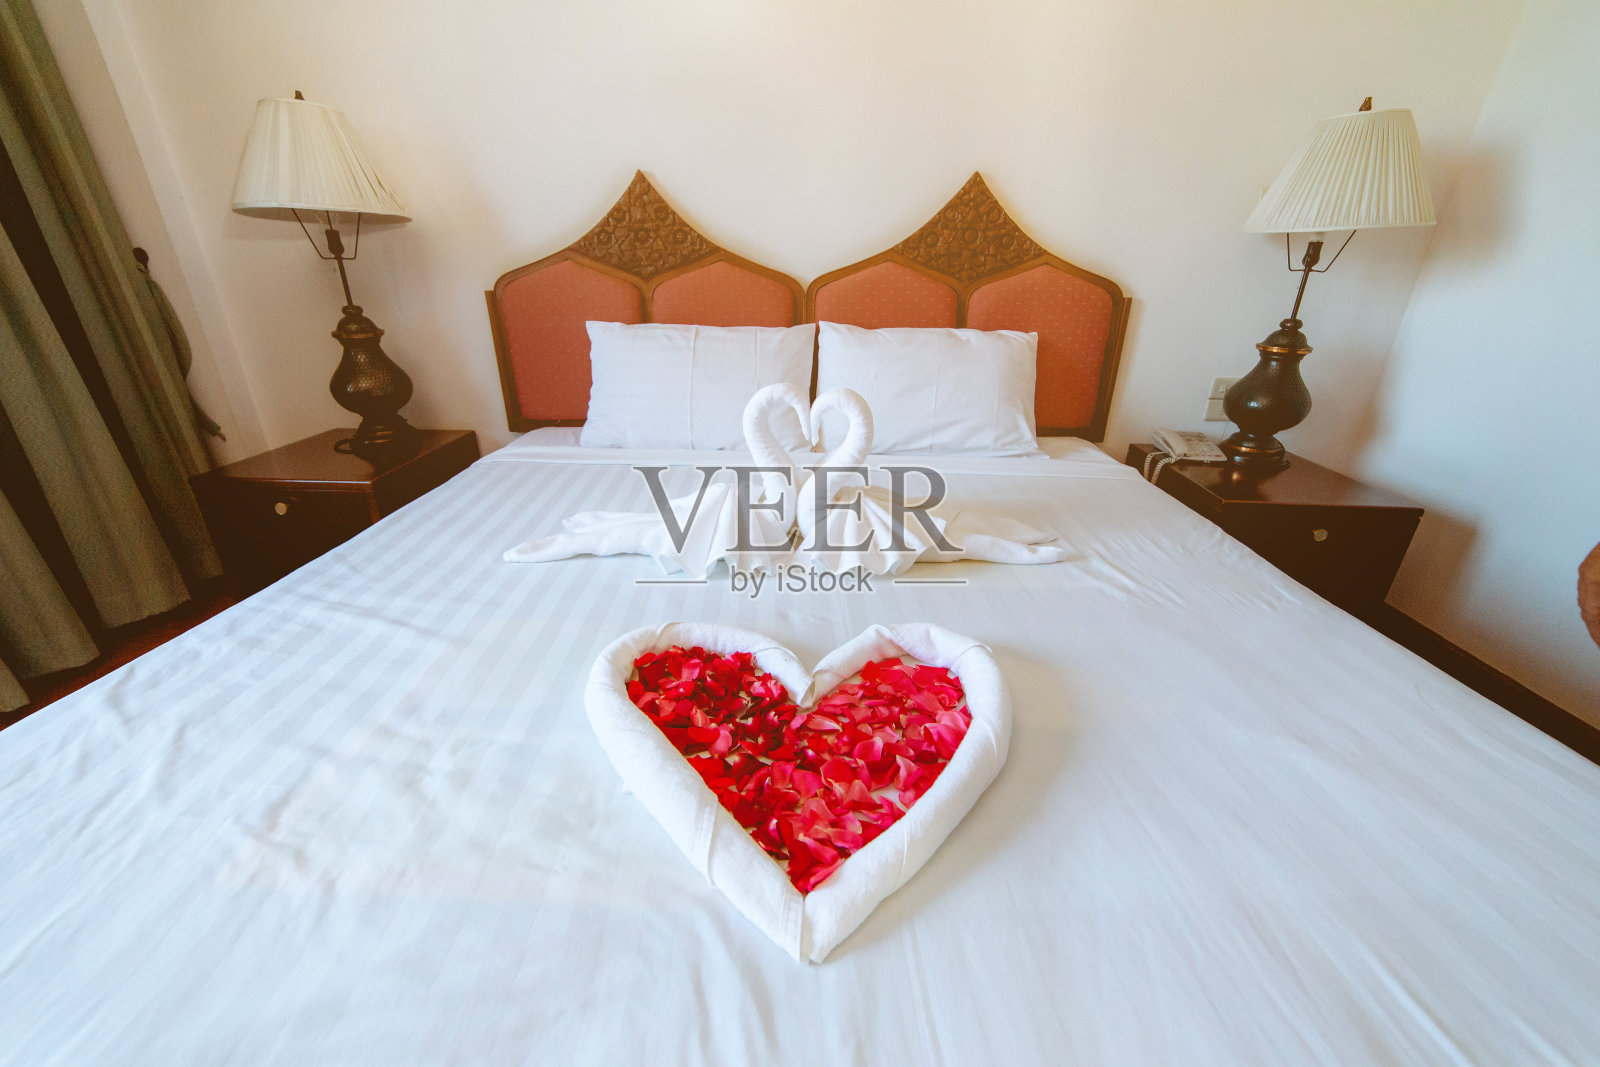 豪华酒店的床上装饰着玫瑰花瓣和双白天鹅形状的织物。照片摄影图片